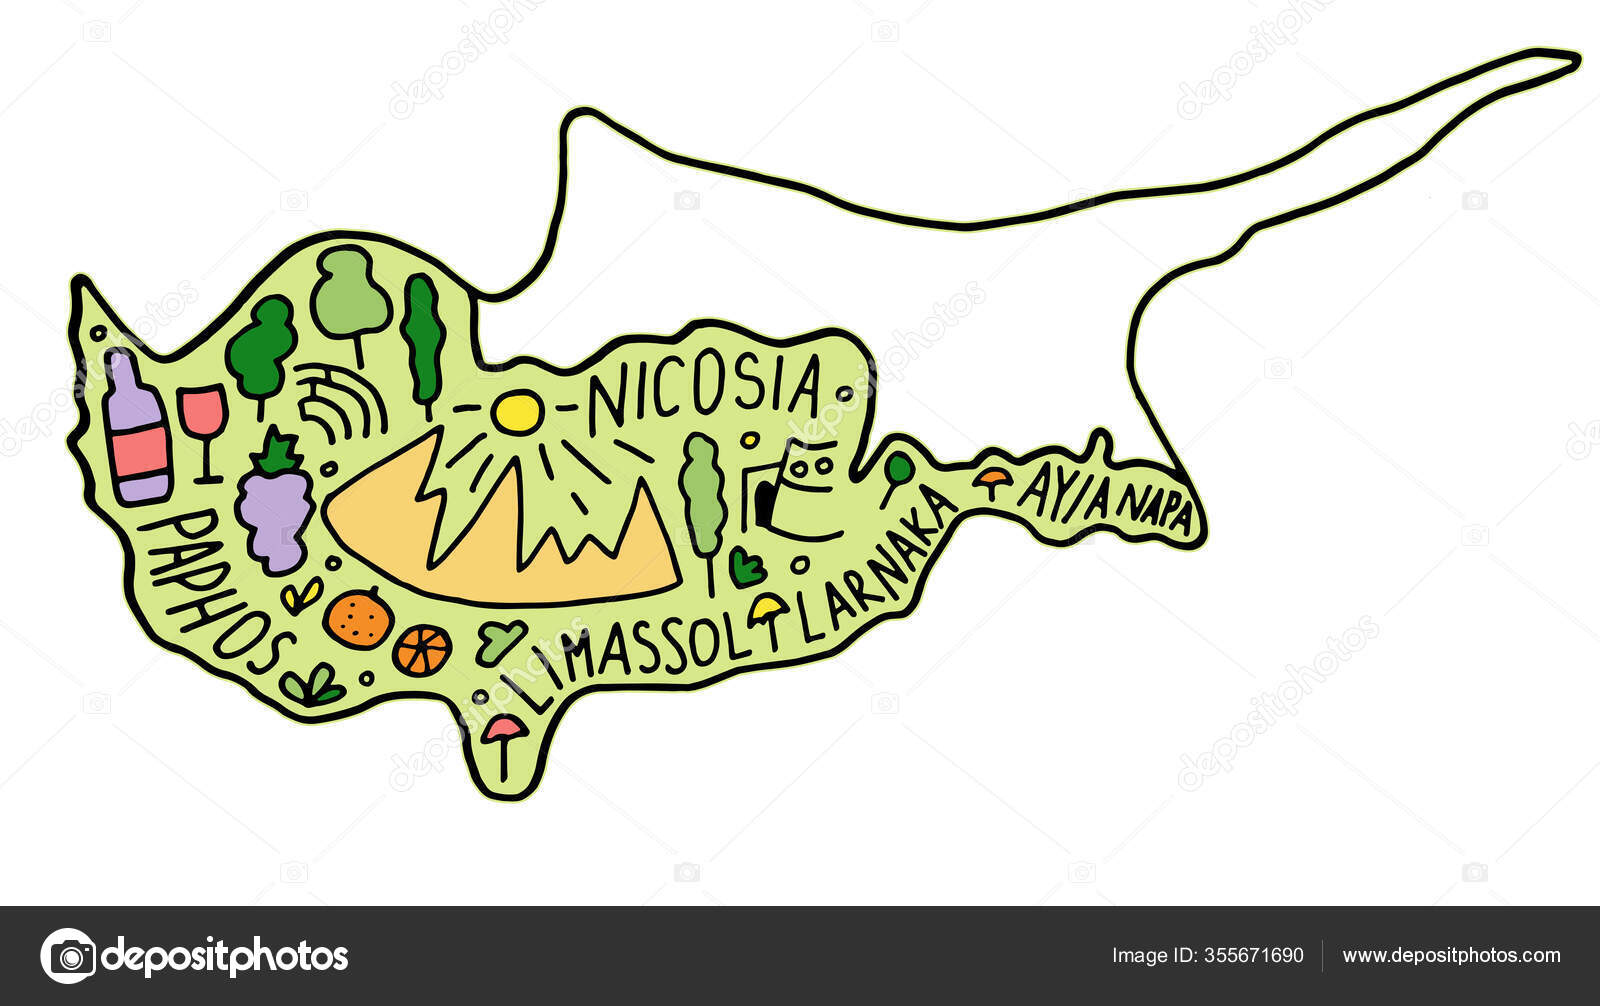 colorida Portugal mapa com regiões e a Principal cidades. vetor